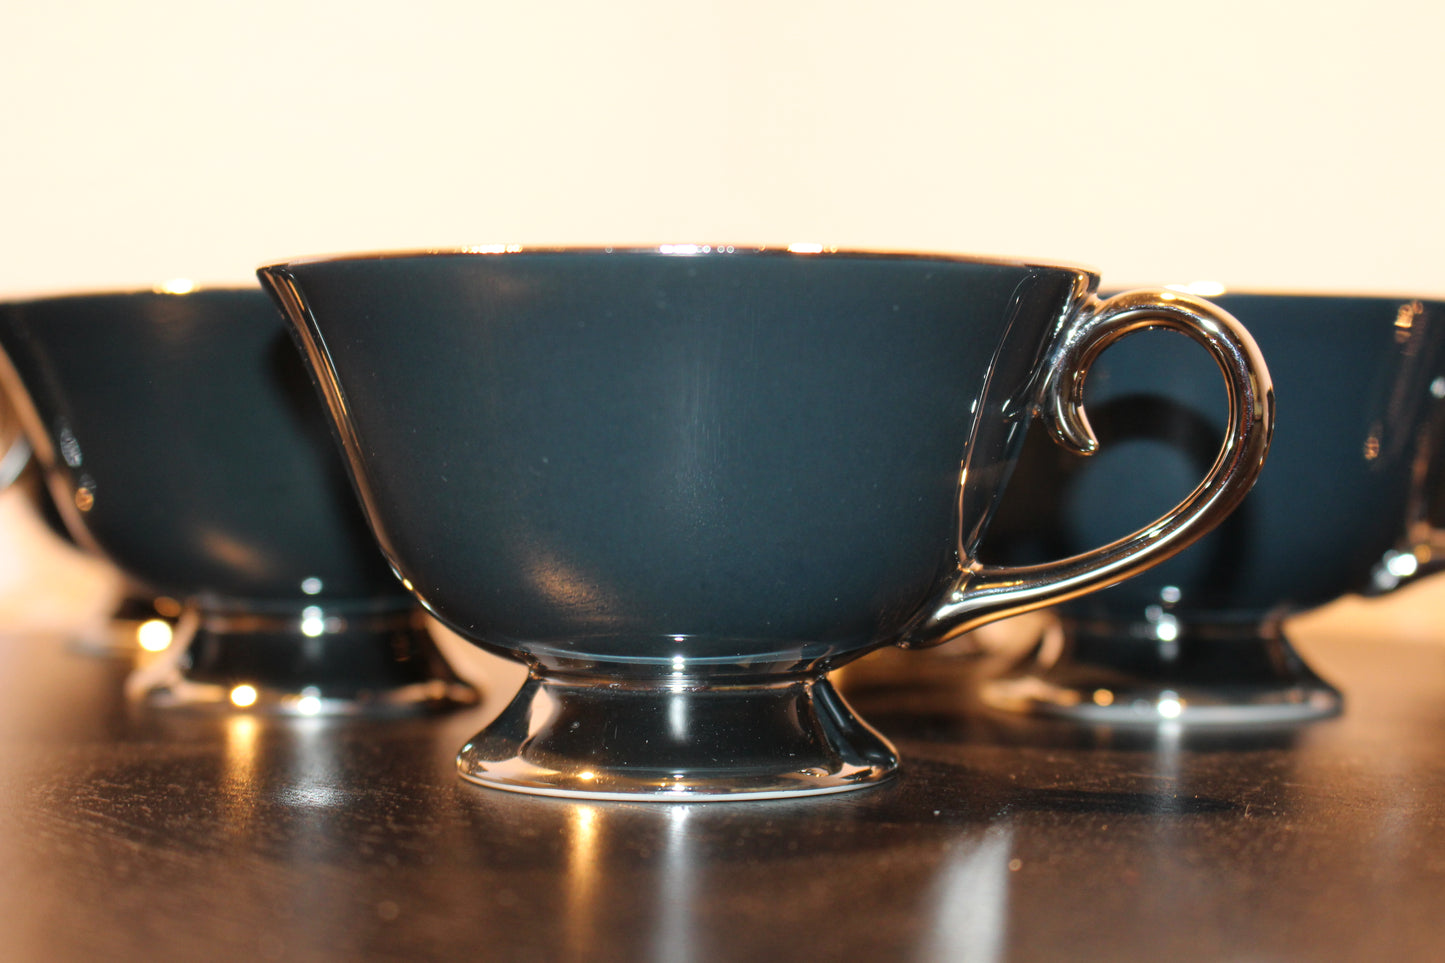 Flintridge Teacup Set